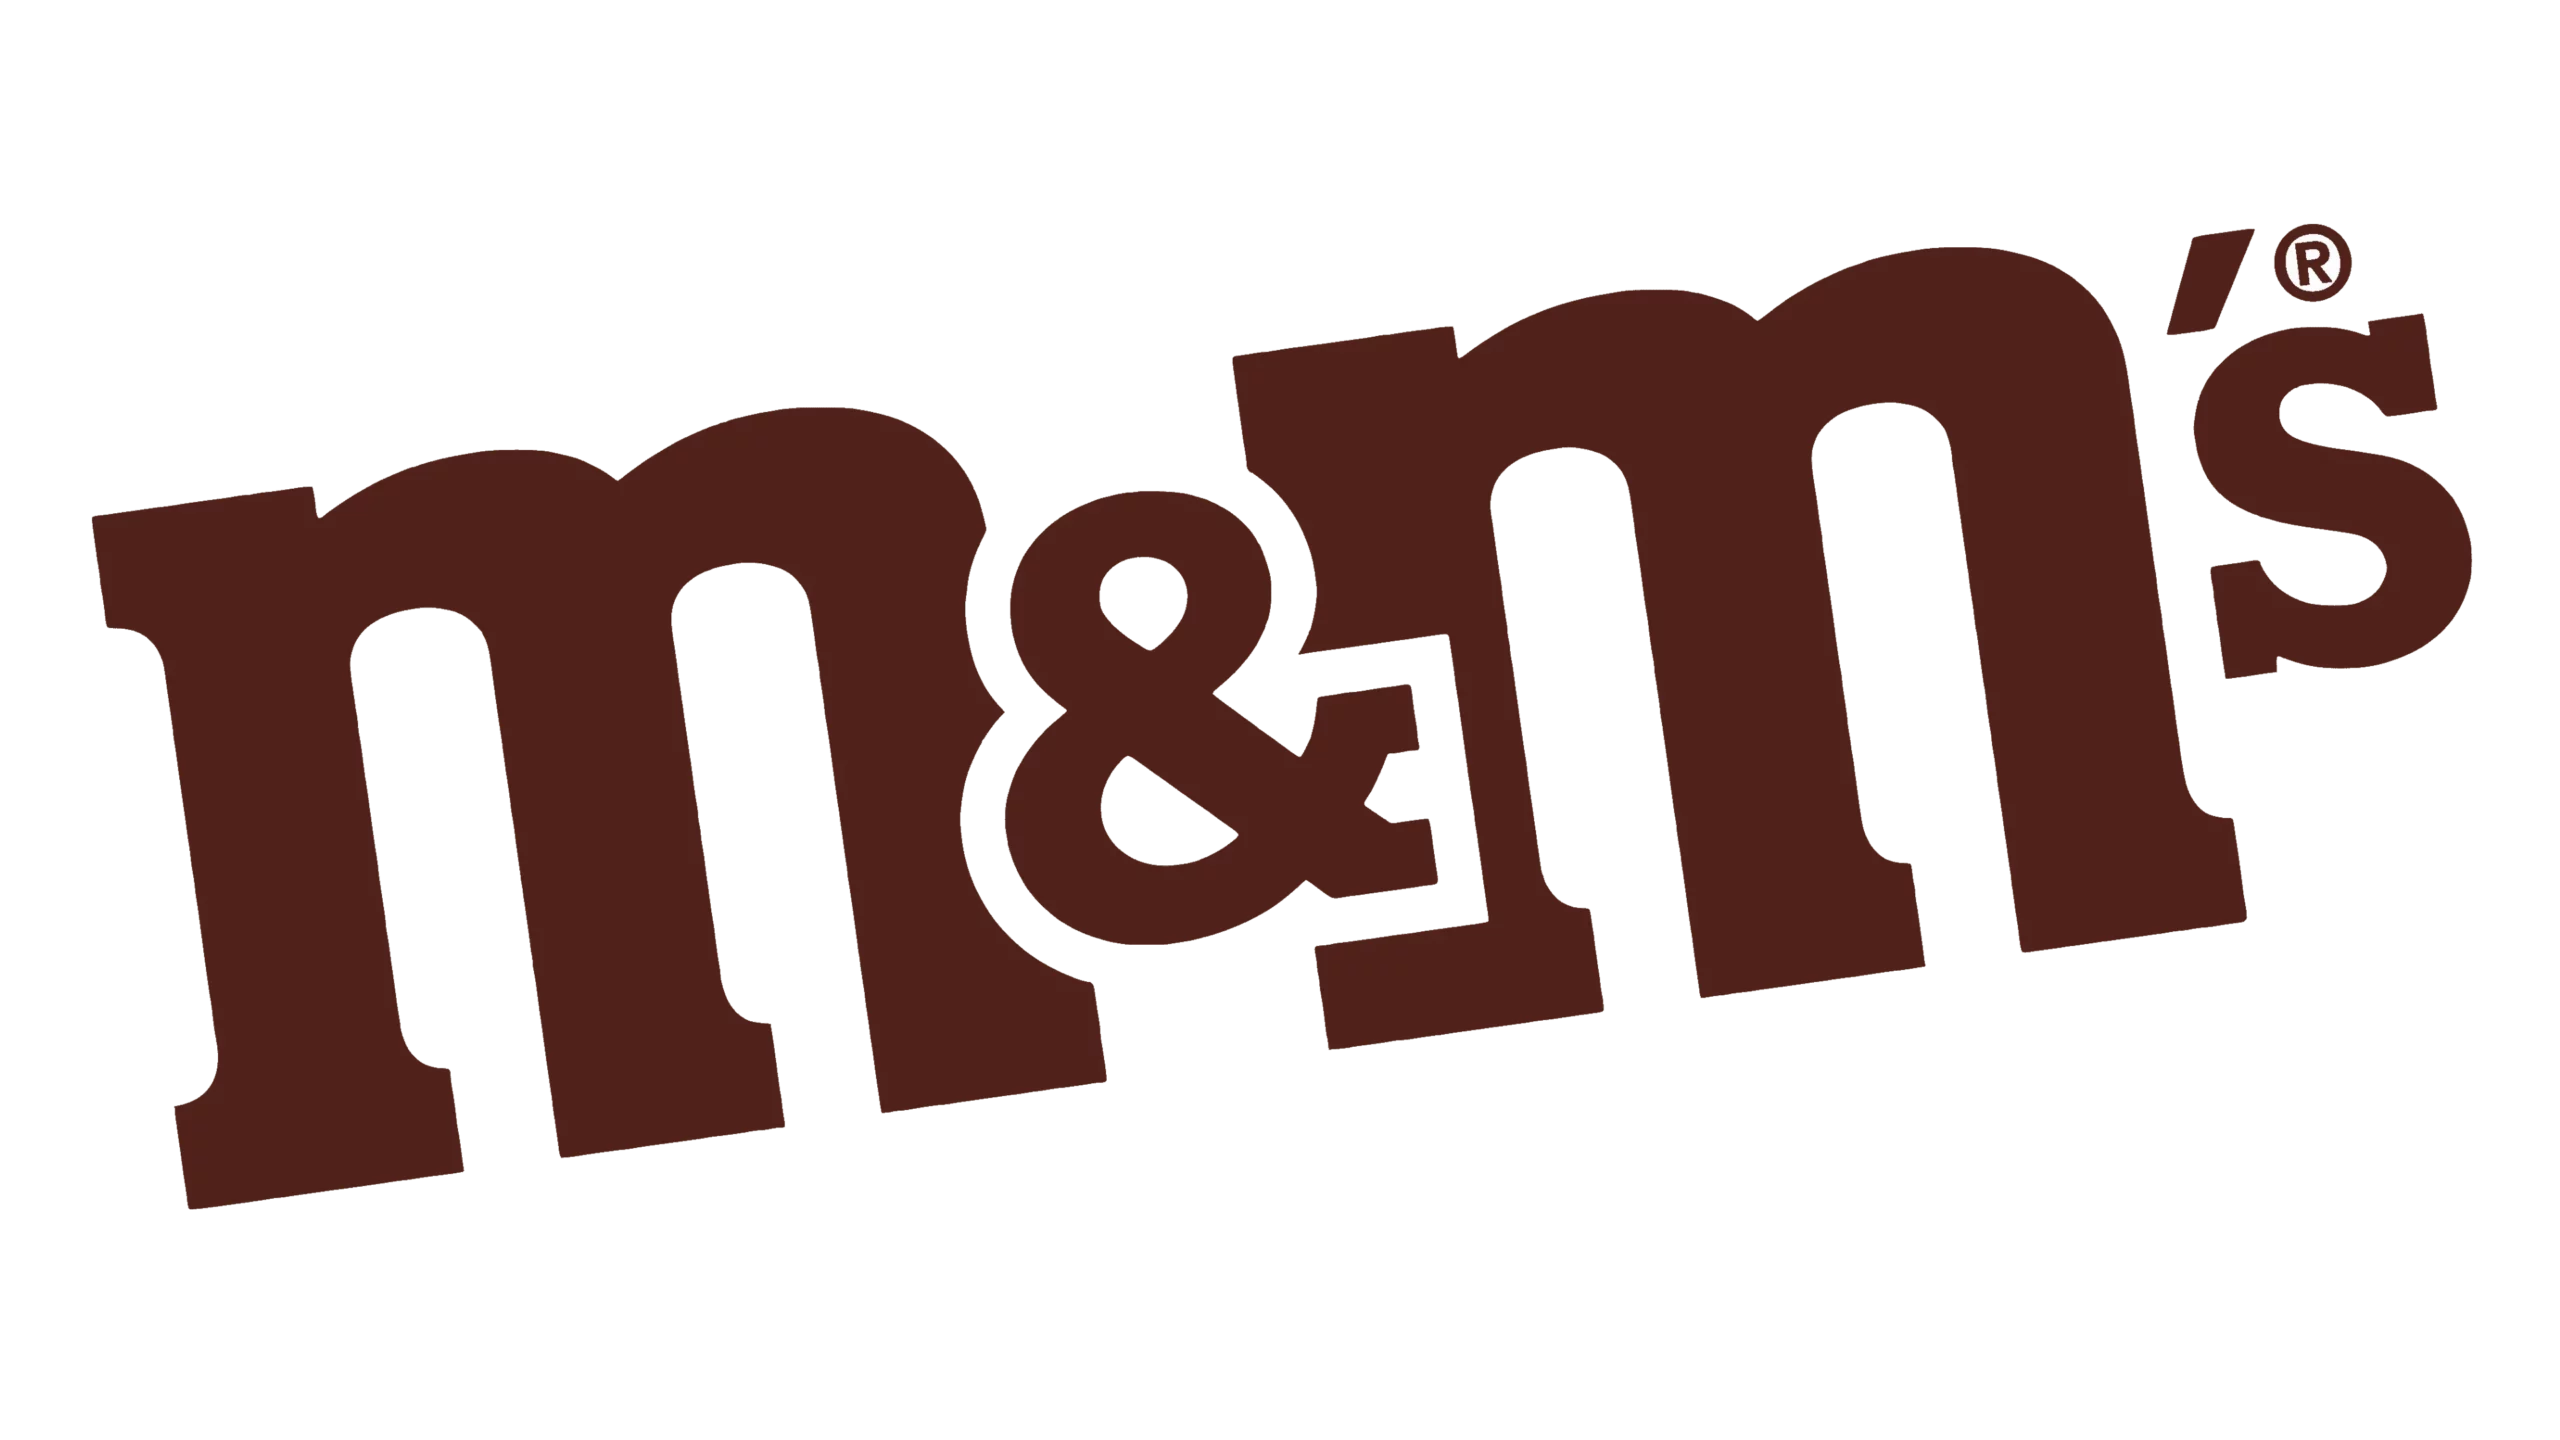 Logo de la marque de sucrerie M&M's